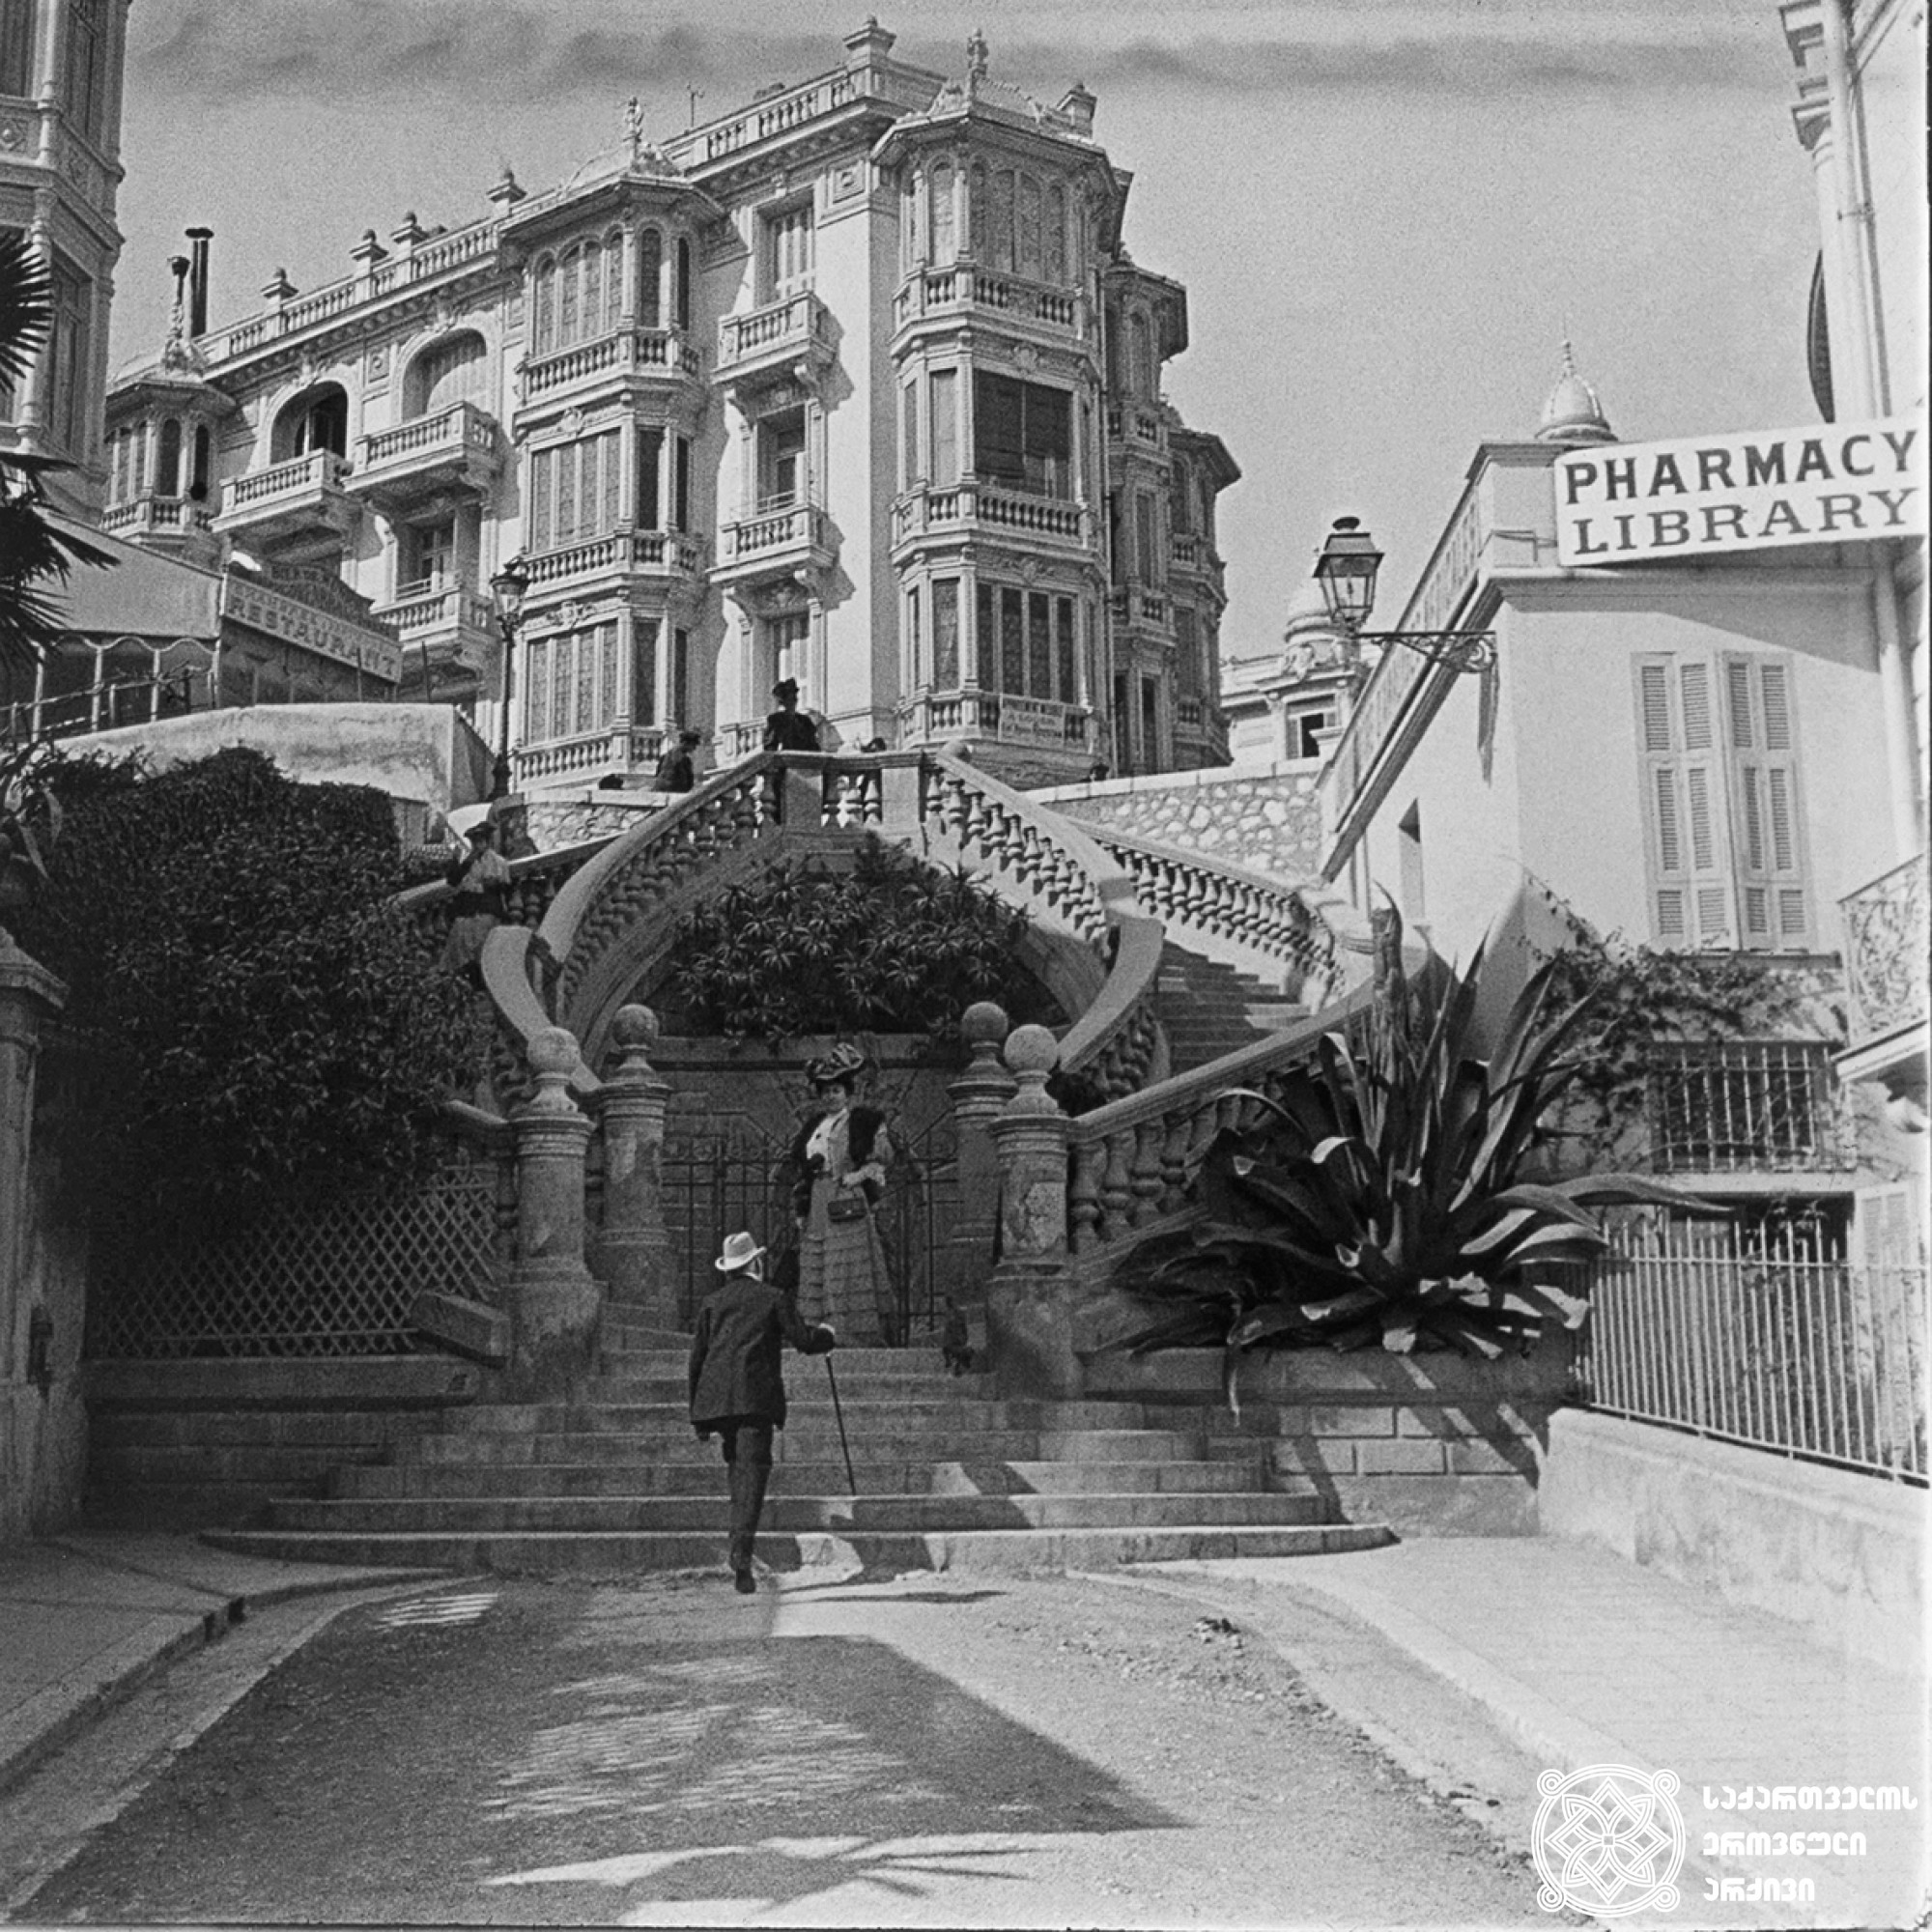 ე.ი. თამამშევა მონტე-კარლოში <br>
1907 წელი <br>
გიგლო ყარალაშვილის კოლექცია <br>

E.I. Tamamsheva in Monte Carlo  <br>
1907  <br>
Giglo Karalashvili collection